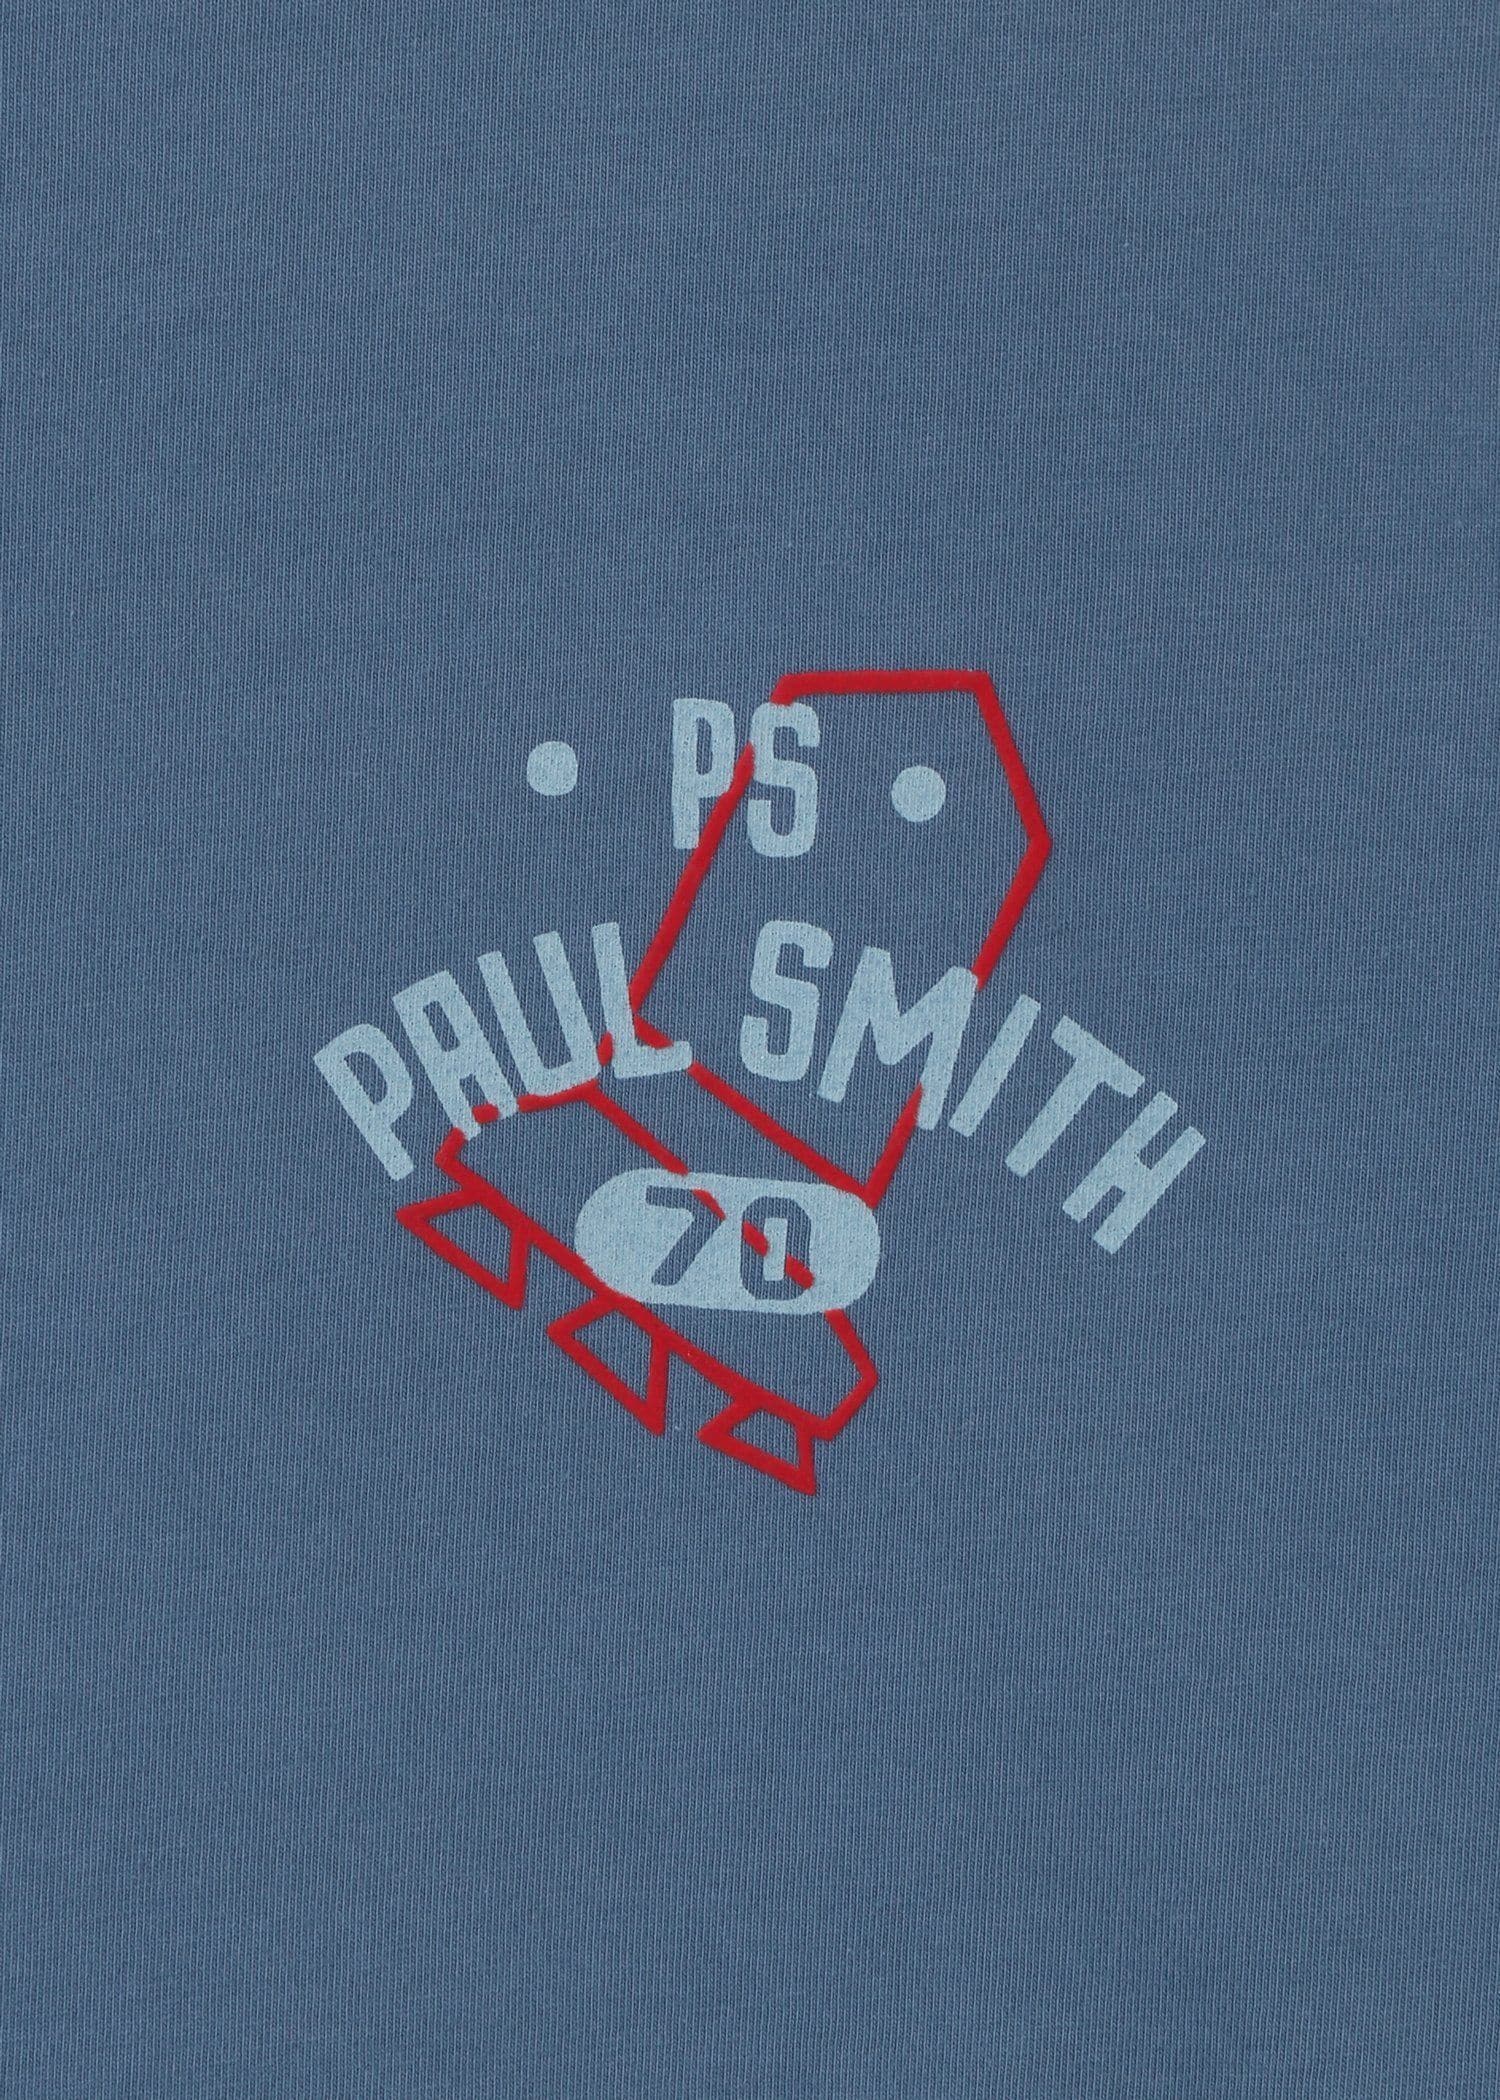 Drawn by Paul "PS Shuttle" Tシャツ